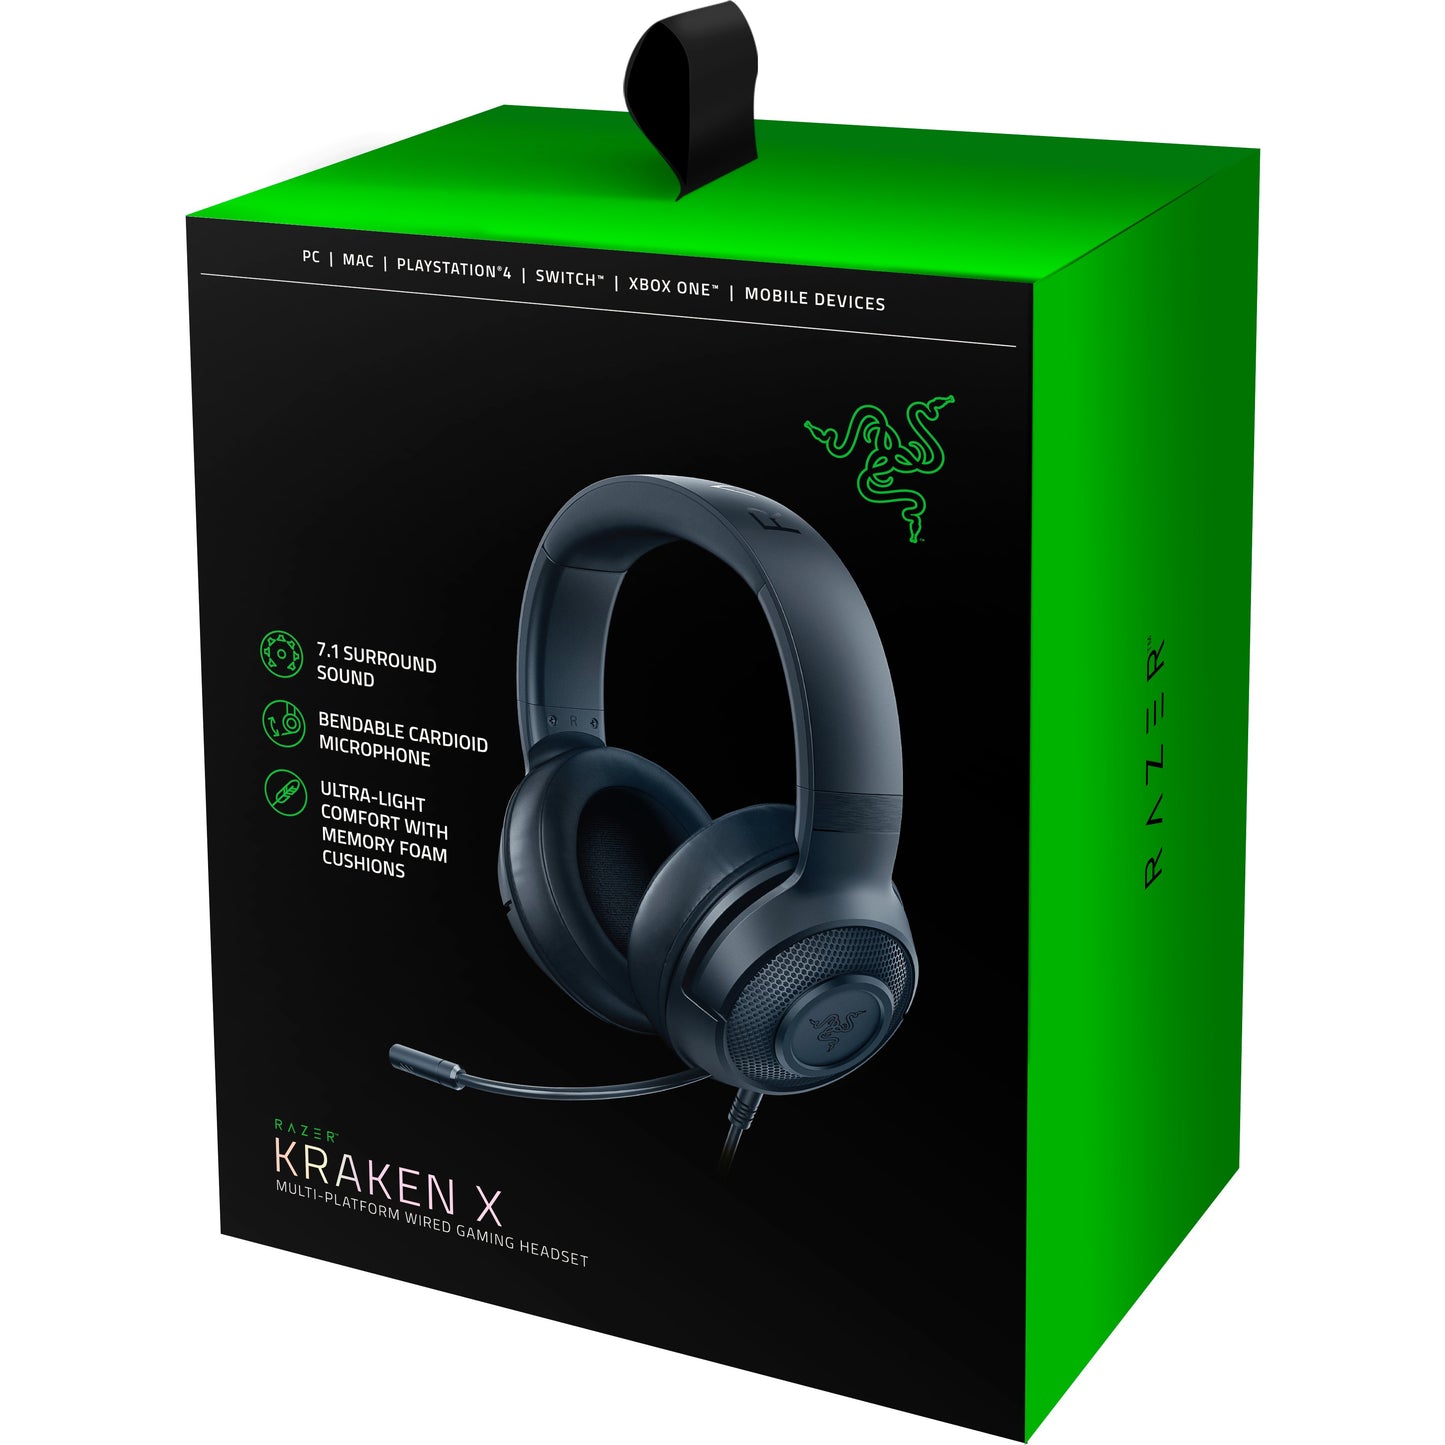 Razer Kraken X 7.1 Surround Sound Gaming Headset - Black